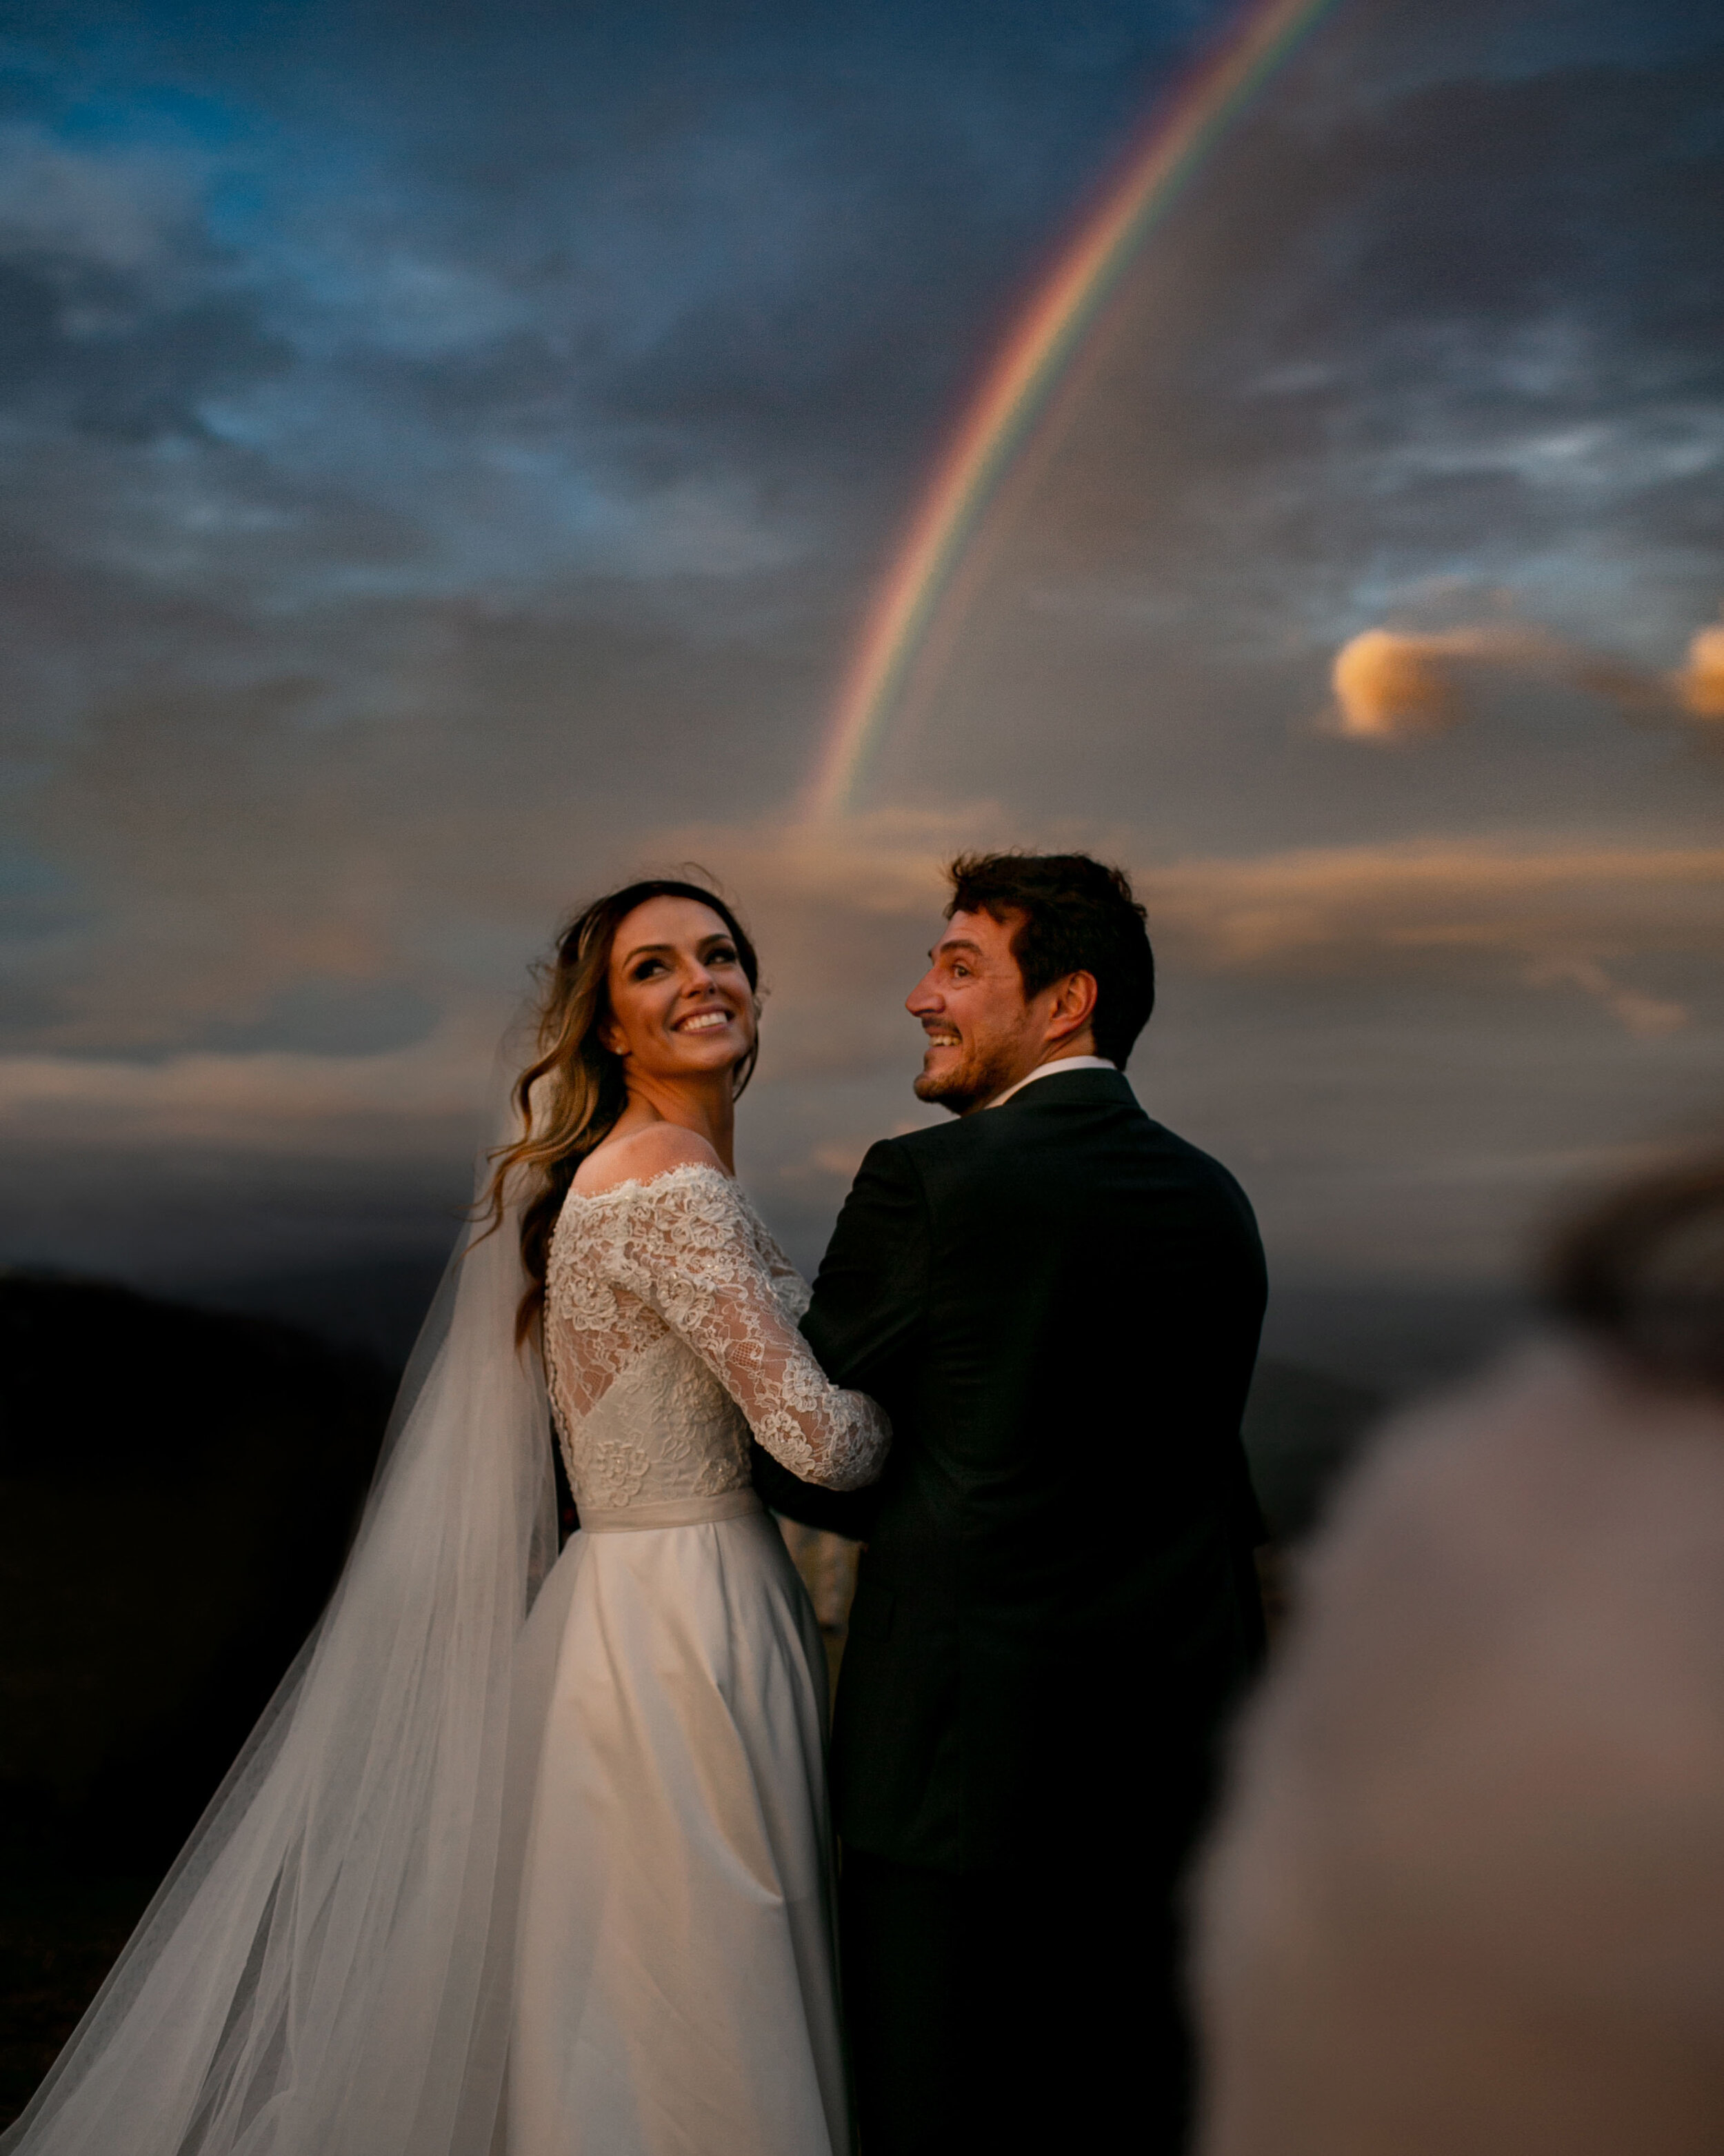 Cheng NV fotografo de casamento em Curitiba- Melhor fotografia do brasil - MIni casamento - Inspiração de decoração - 2020 - noiva - inesquecivel casamento_.3.jpg